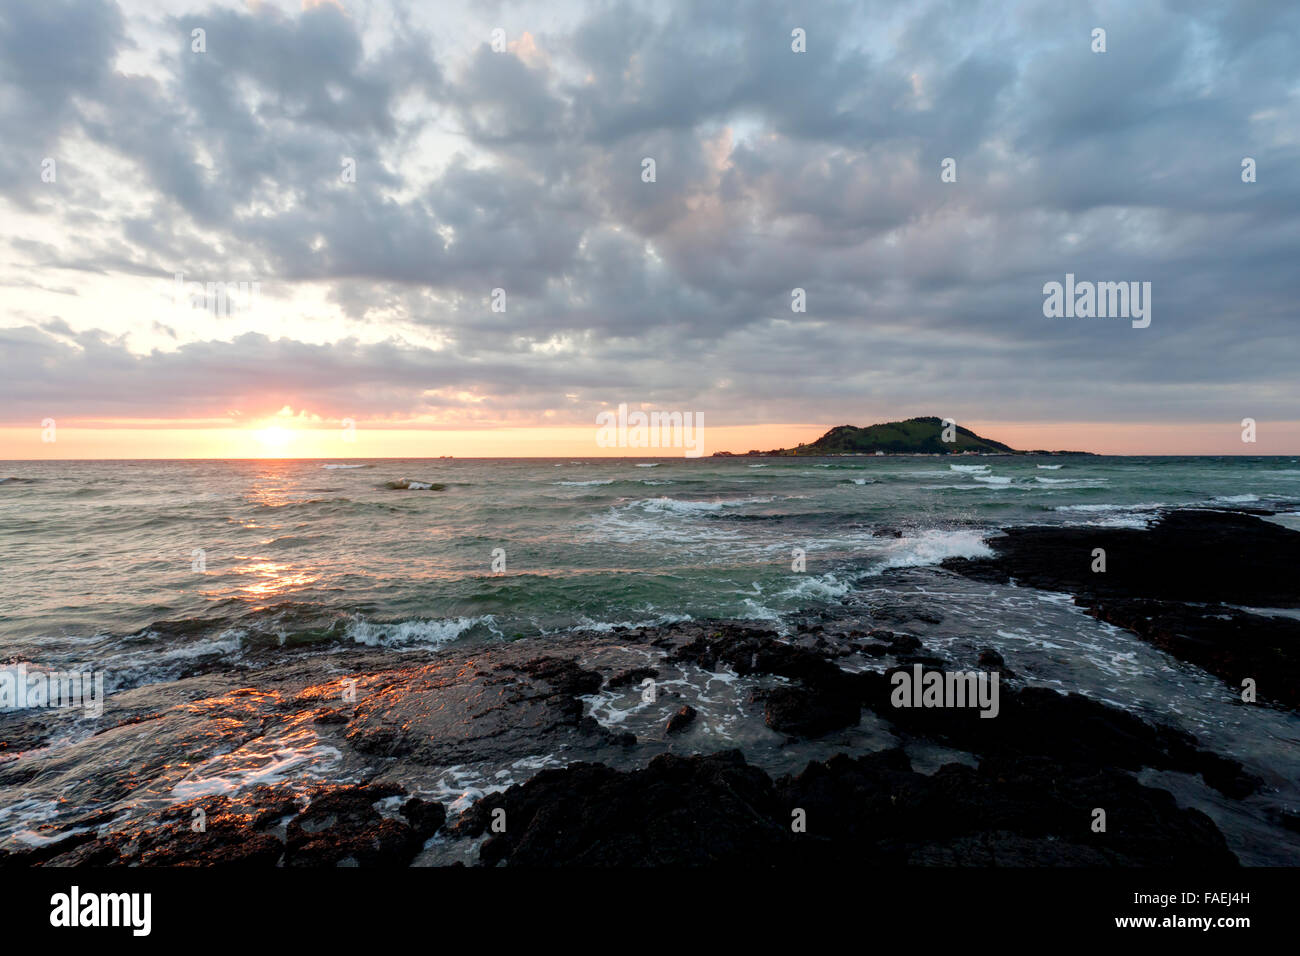 Sunset seascape and volcano, Jeju Island, Korea. Stock Photo